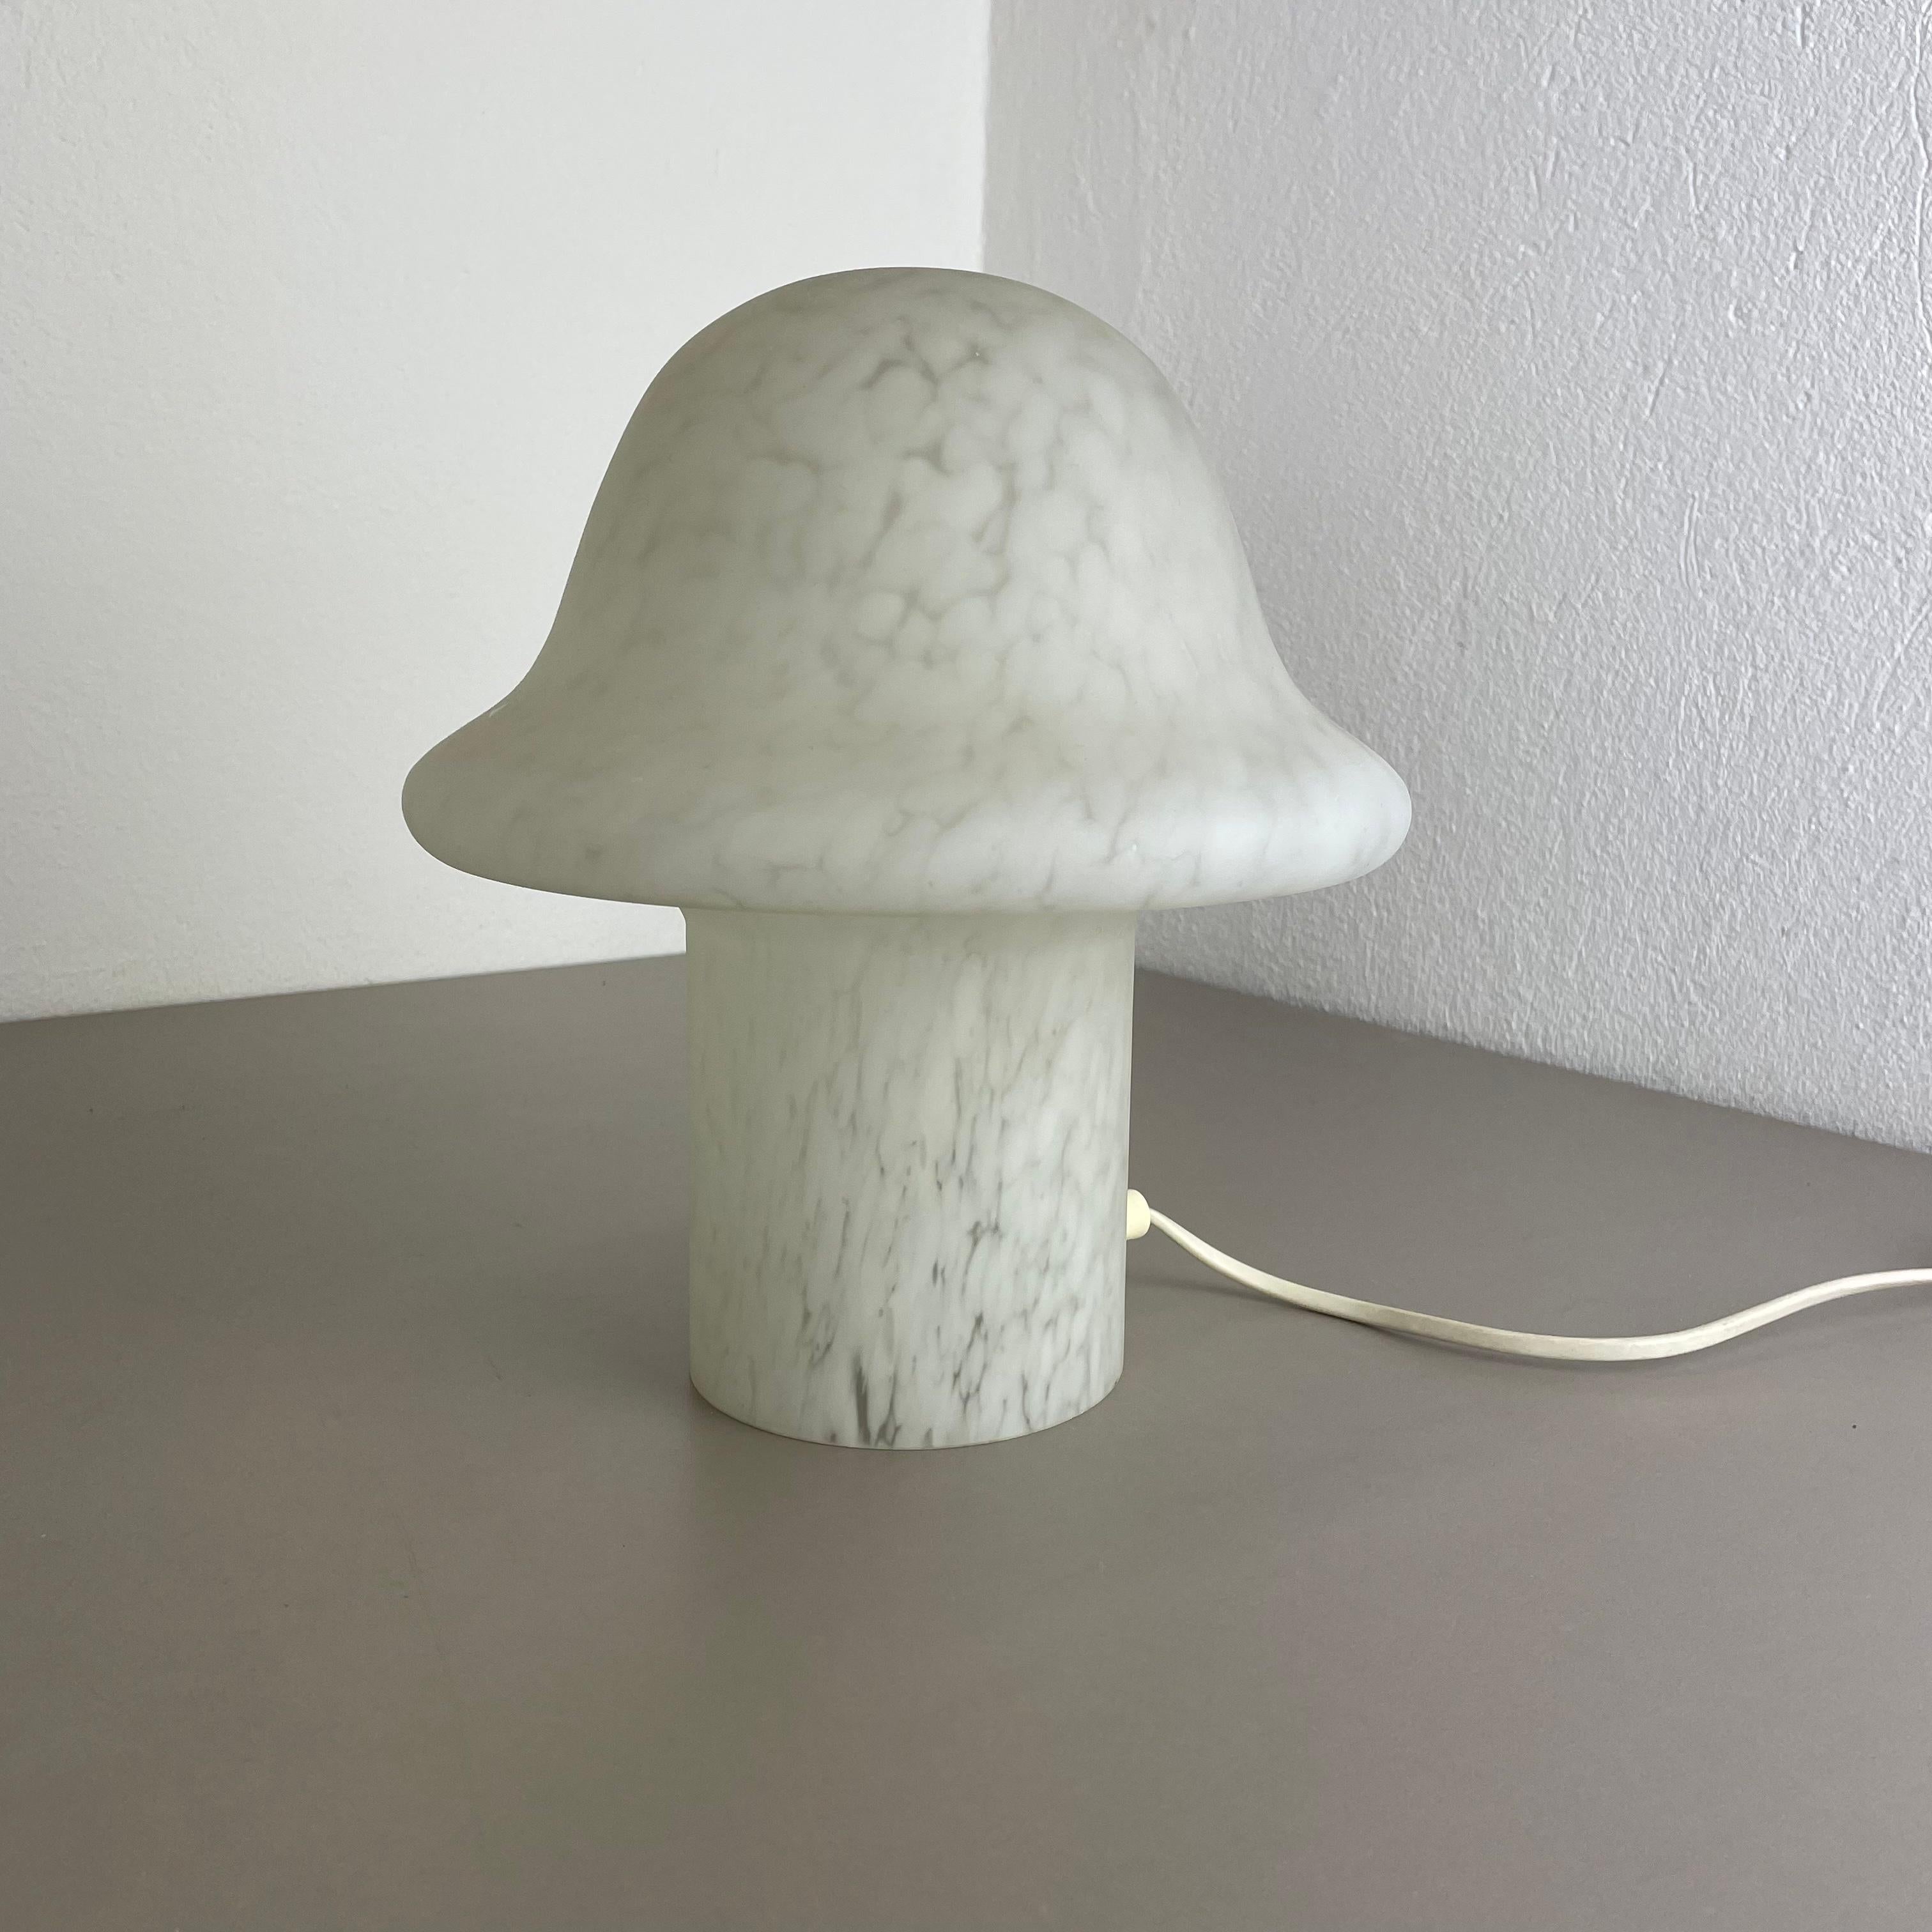 Original Glass Mushroom Desk Light by Peill & Putzler, Germany, 1970s For Sale 11